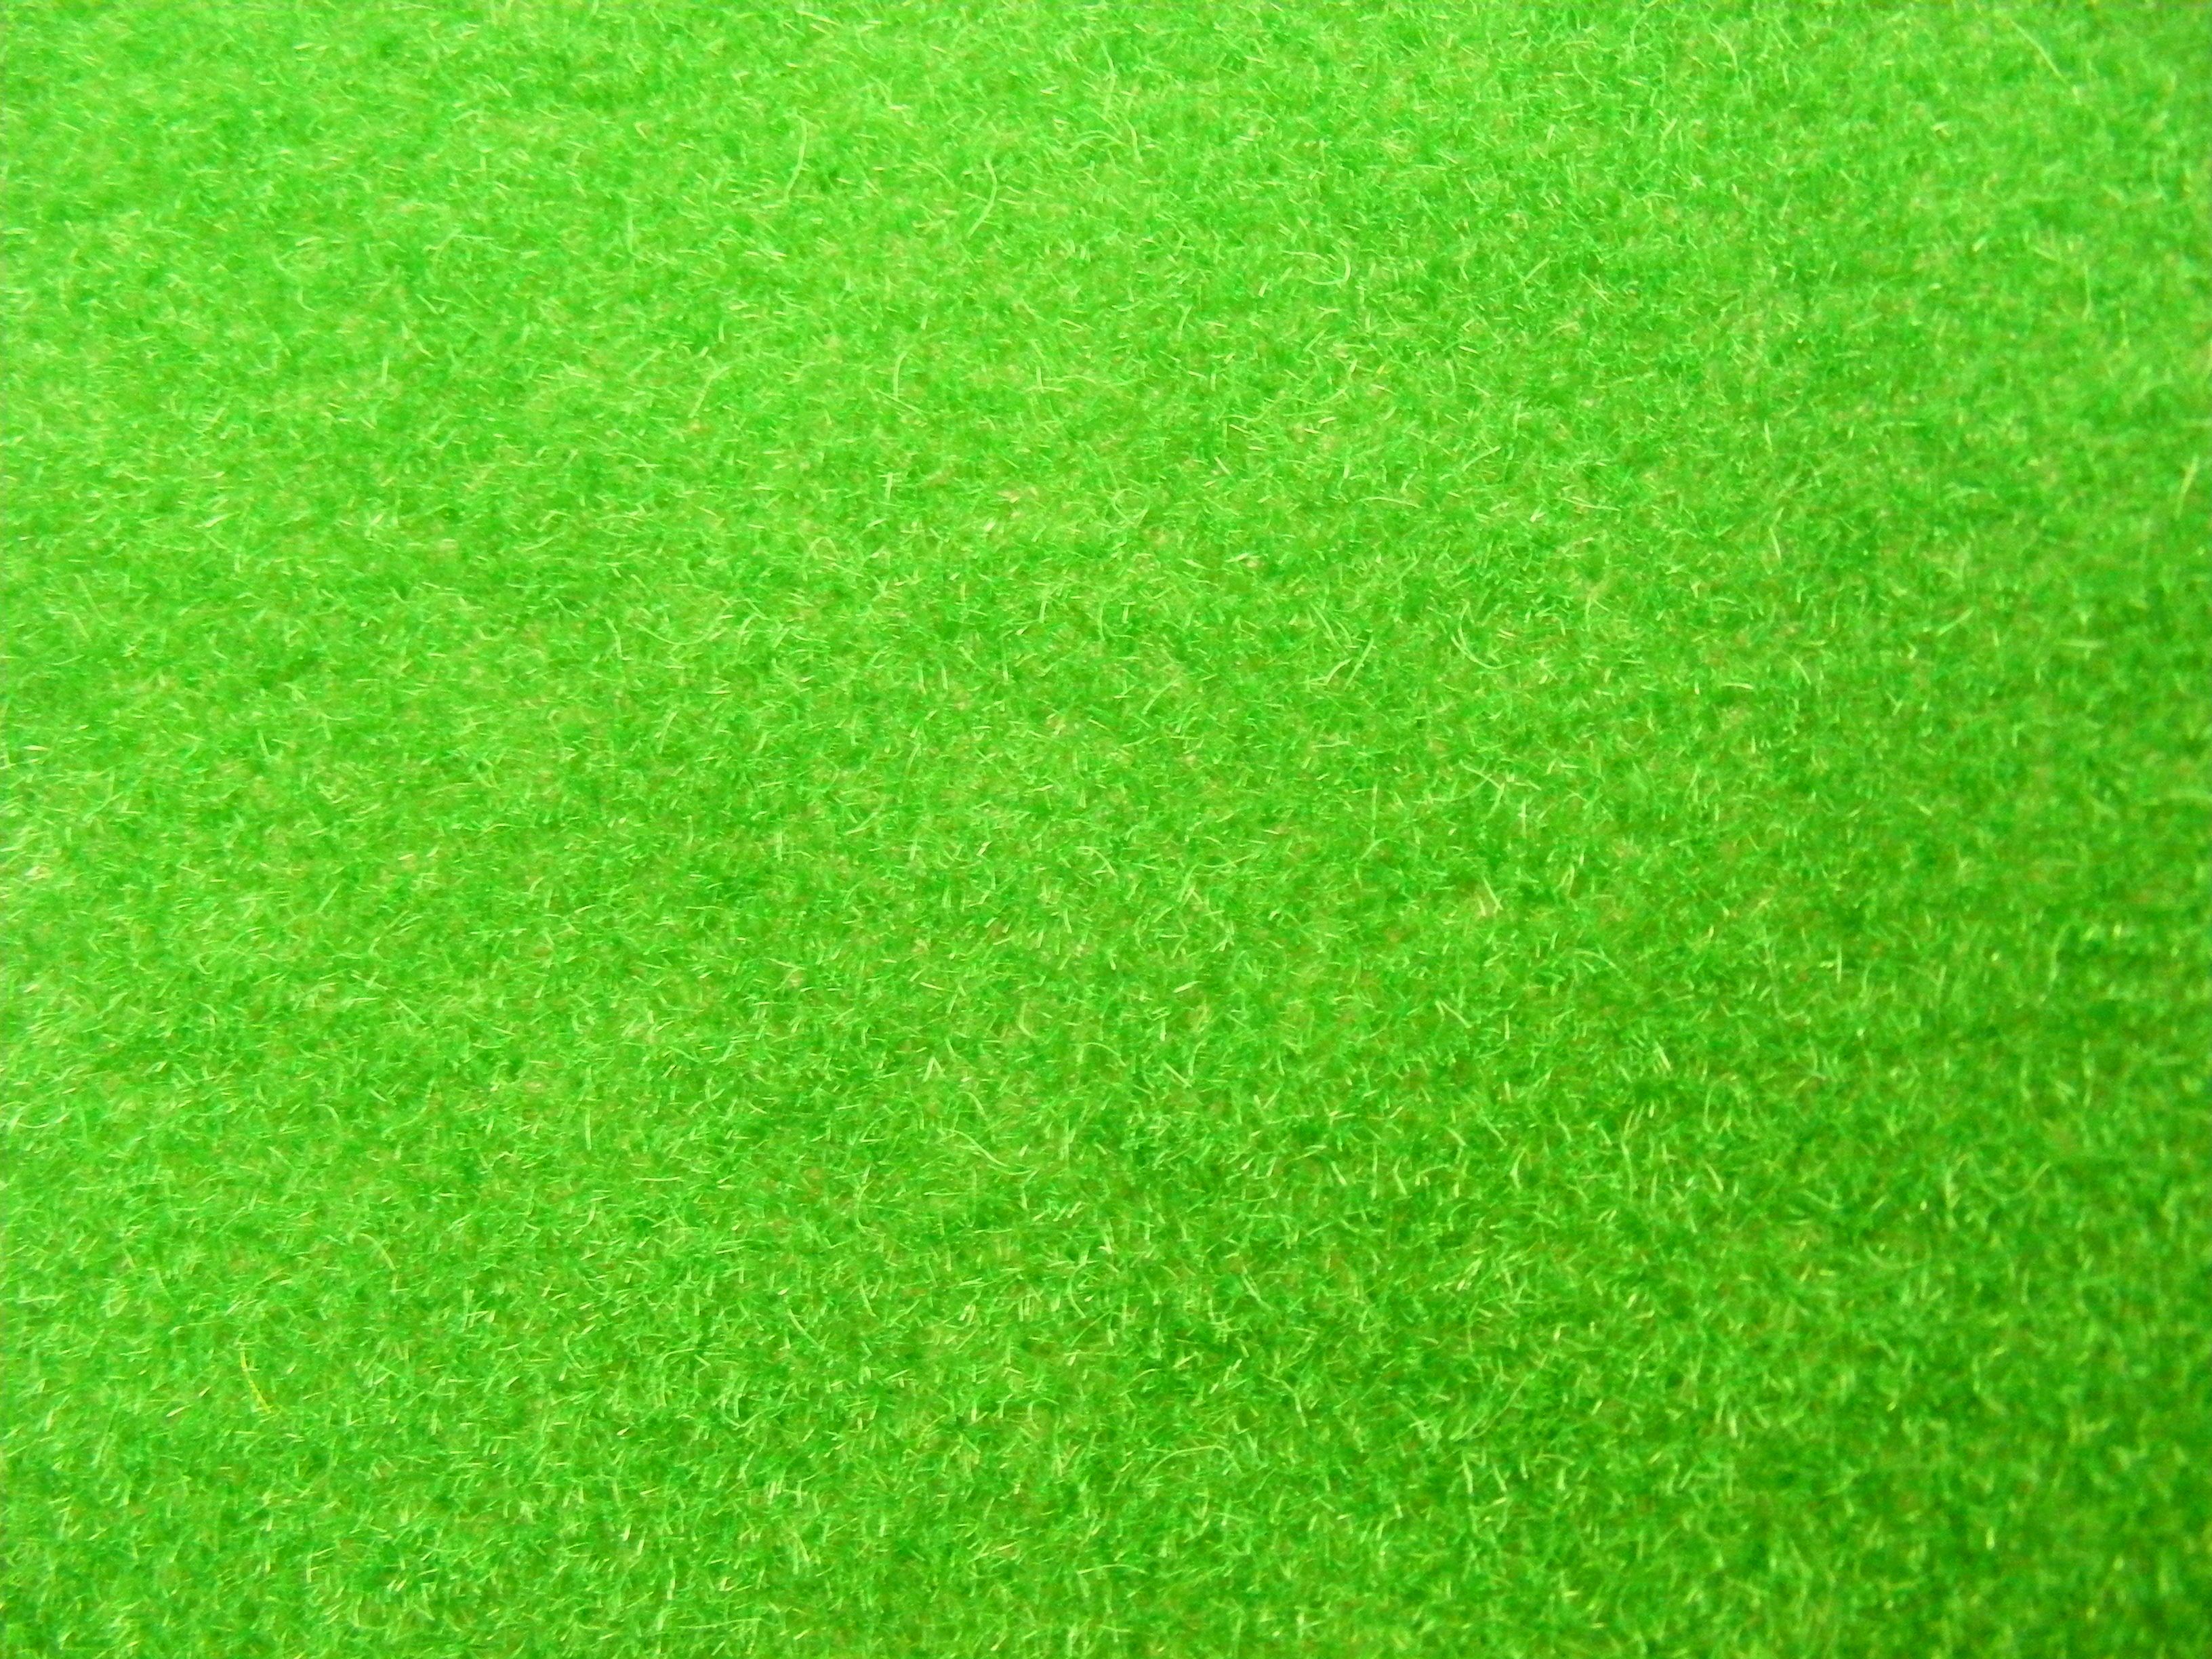 Green Grass Background Three. Photo Texture & Background